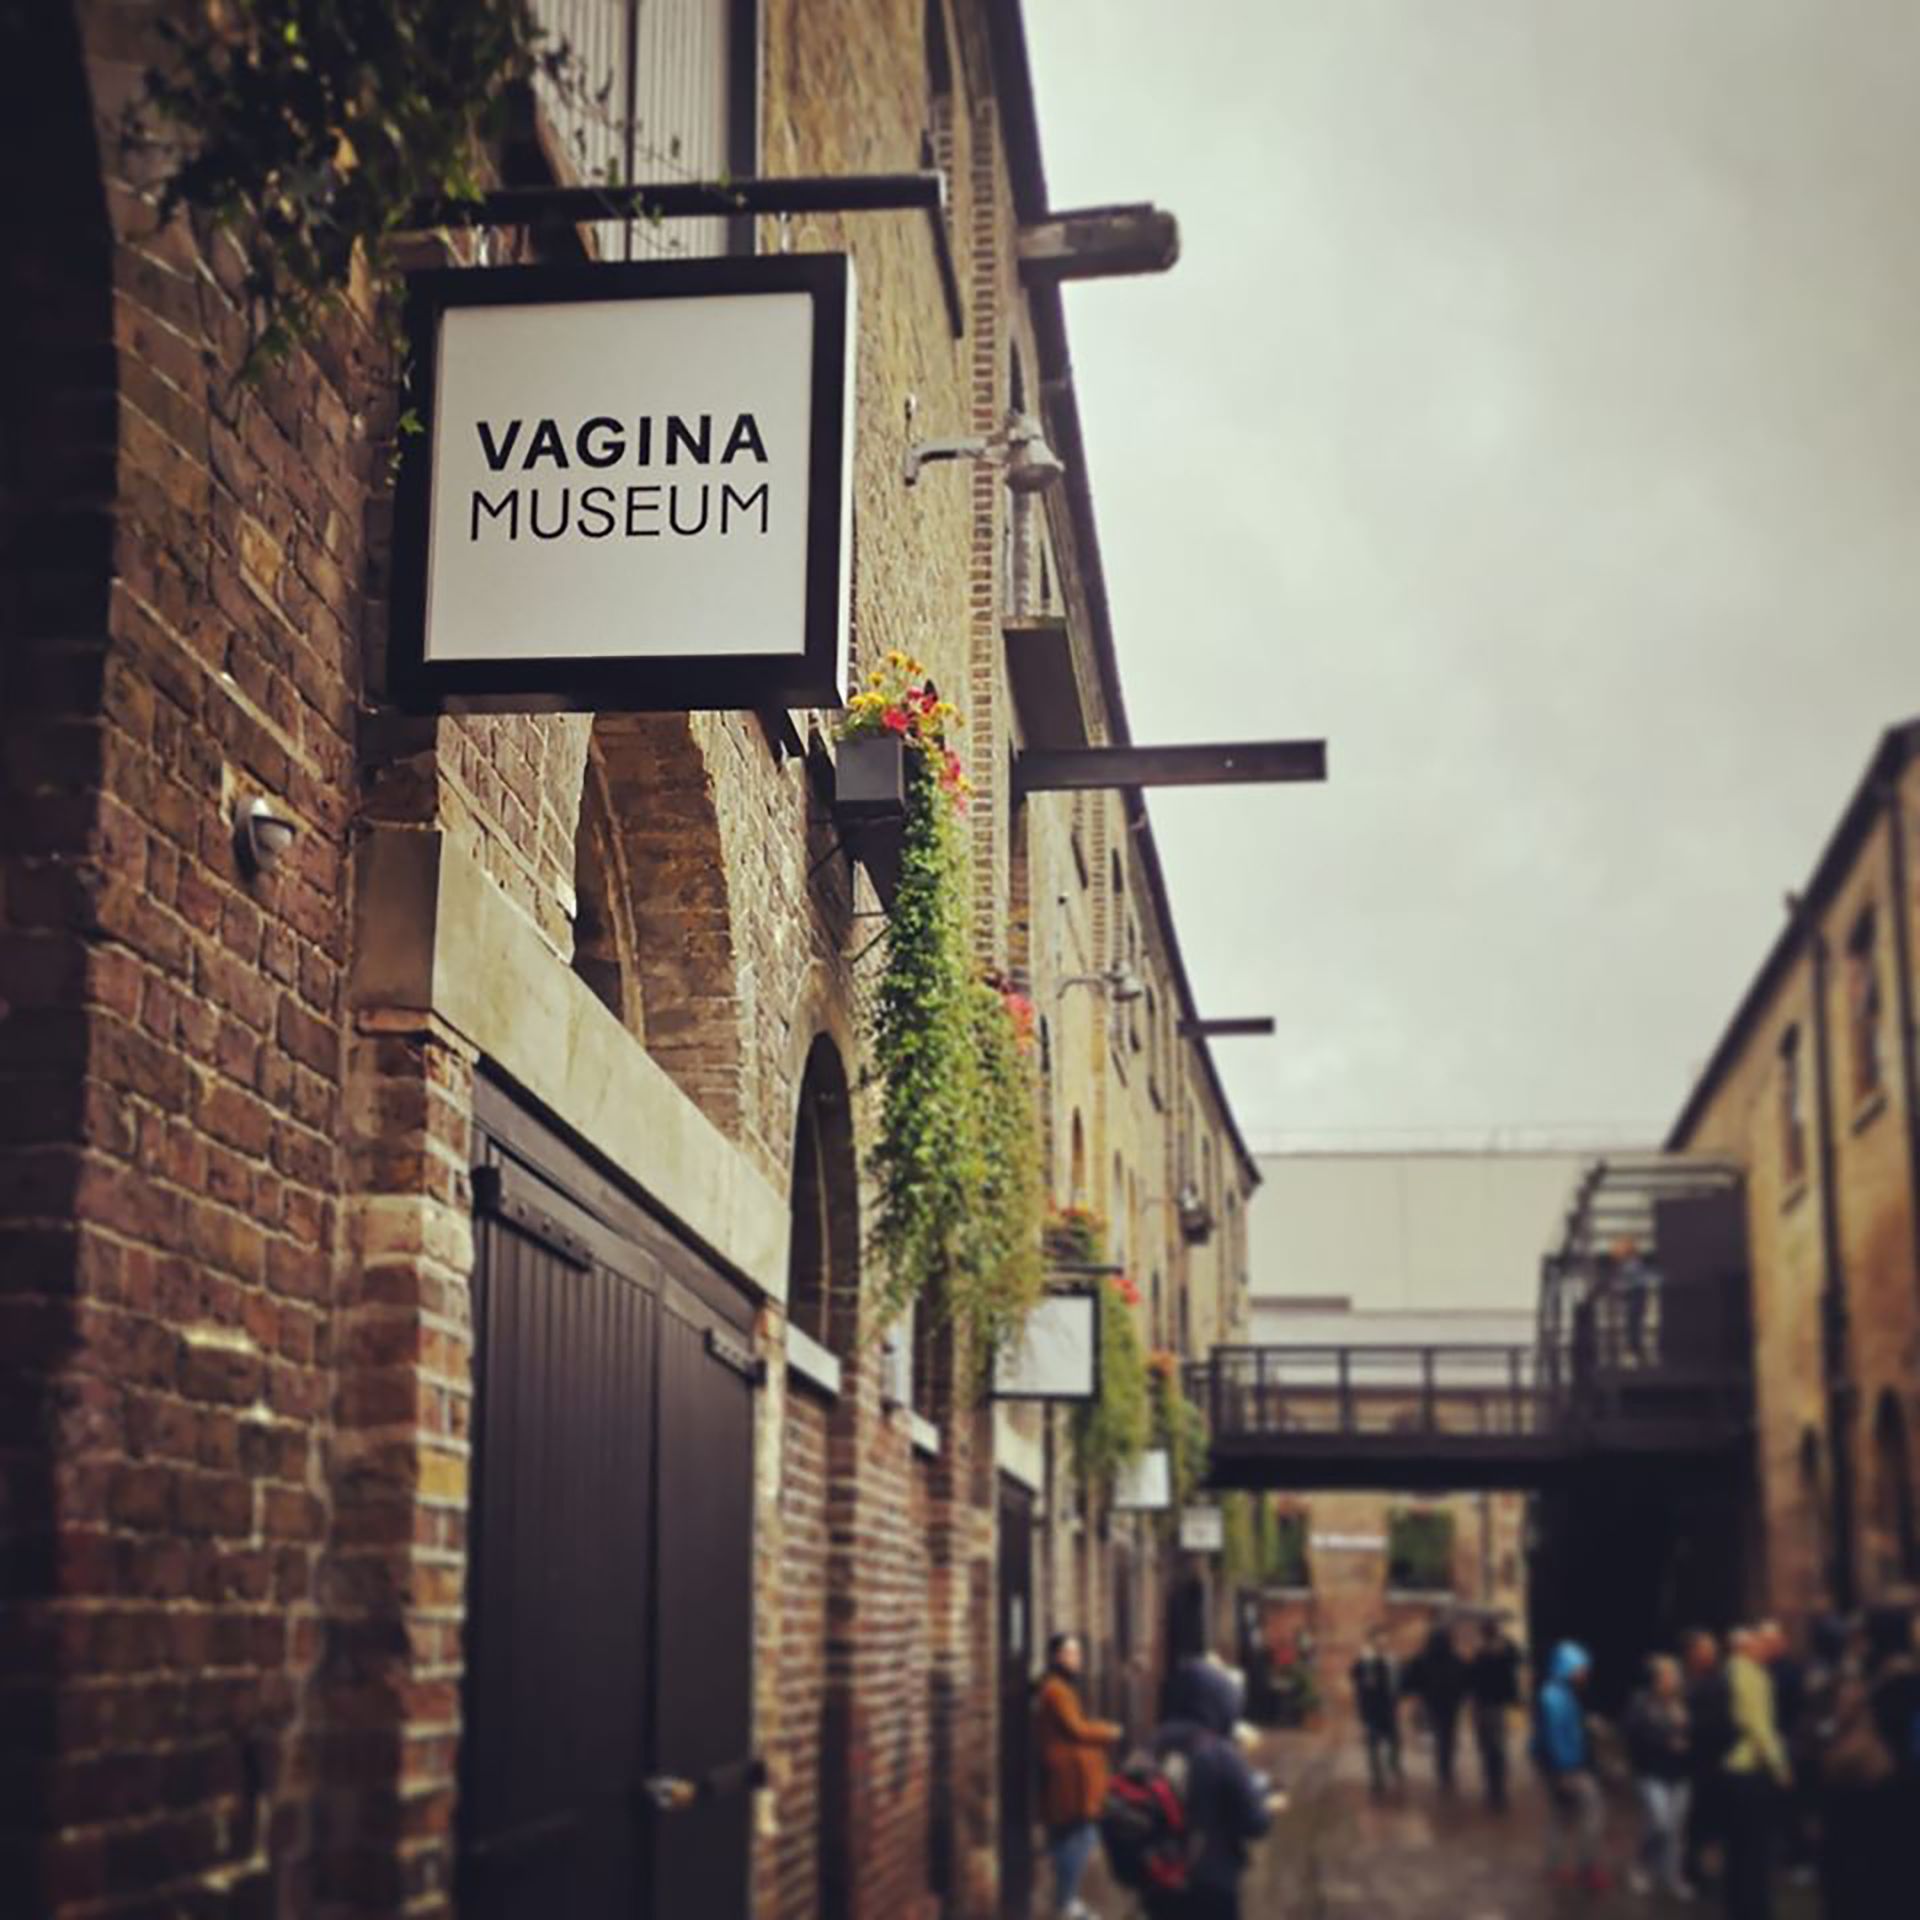 (Museo de la vagina)